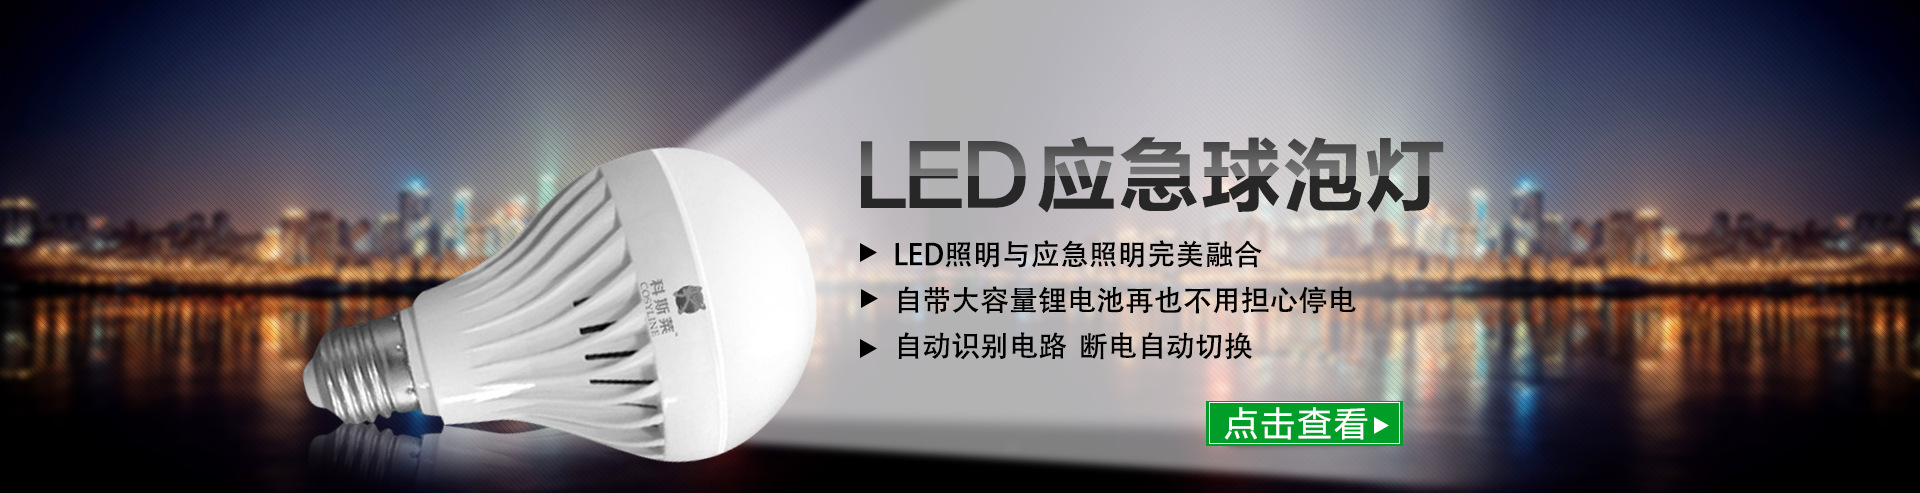 湖南LED路灯节能改造LED长沙路灯工程路灯安装